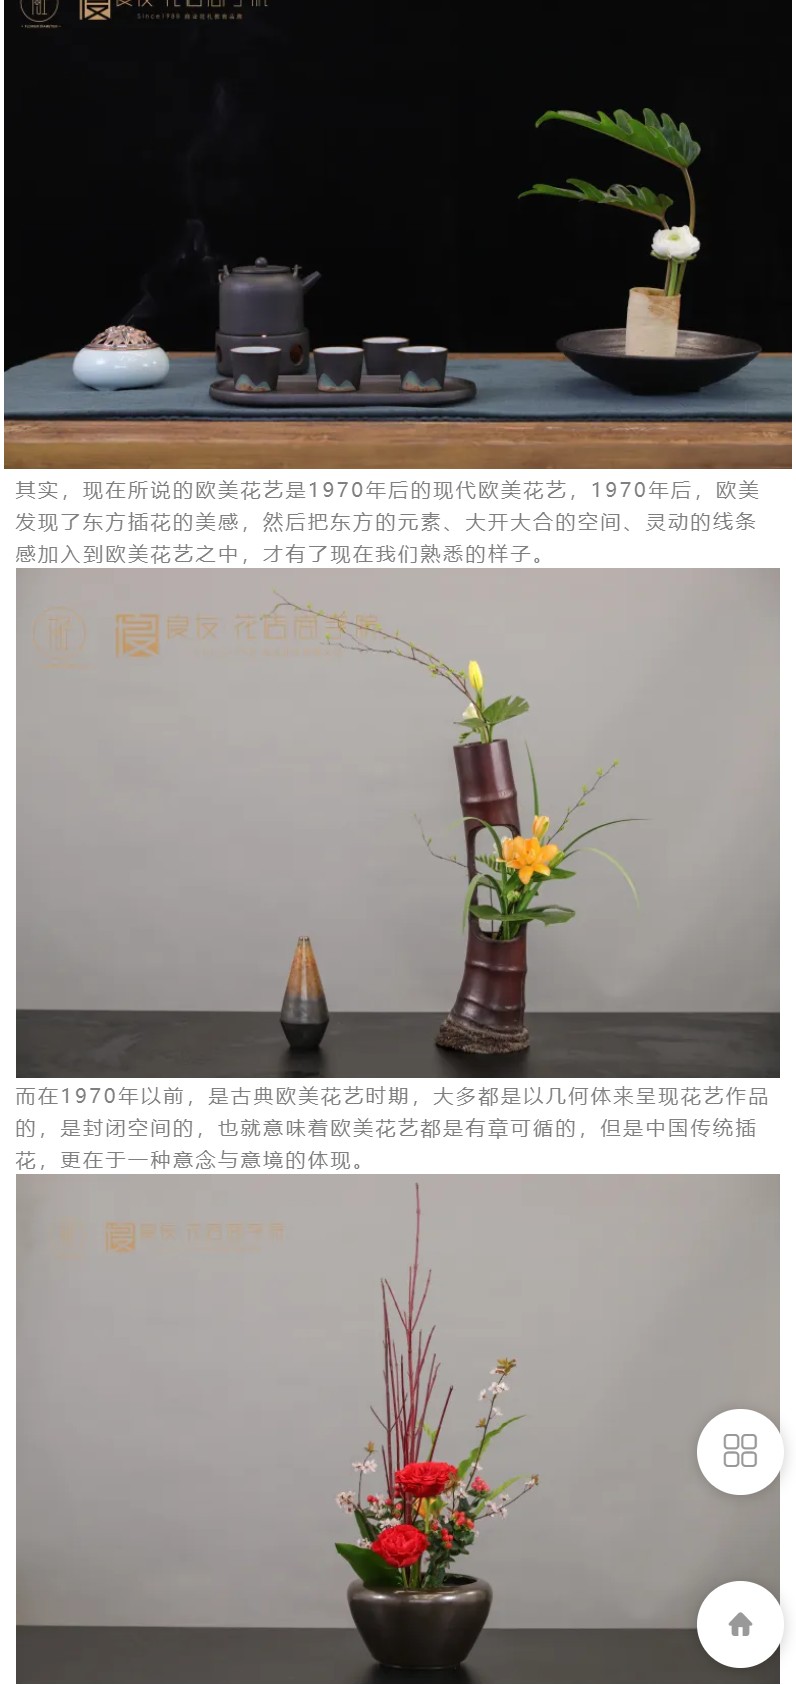 【12[红包]·F3153花艺 中国传统插花 于涛老师教您如何运用四大容器、两大场景制作传统插花】